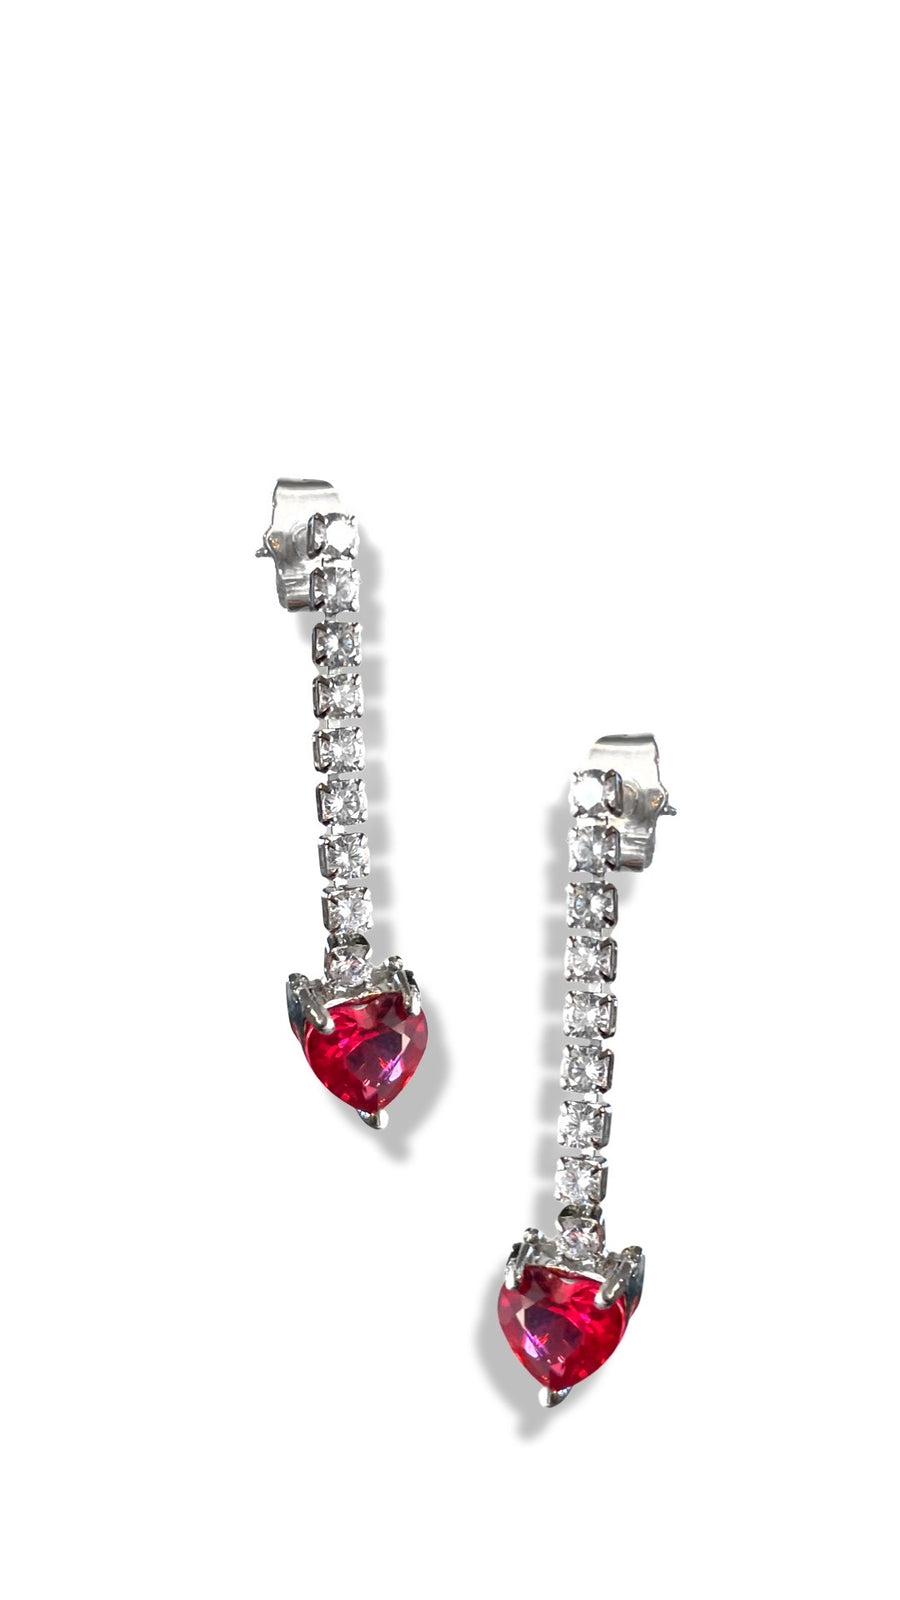 Hot pink heart drop earrings